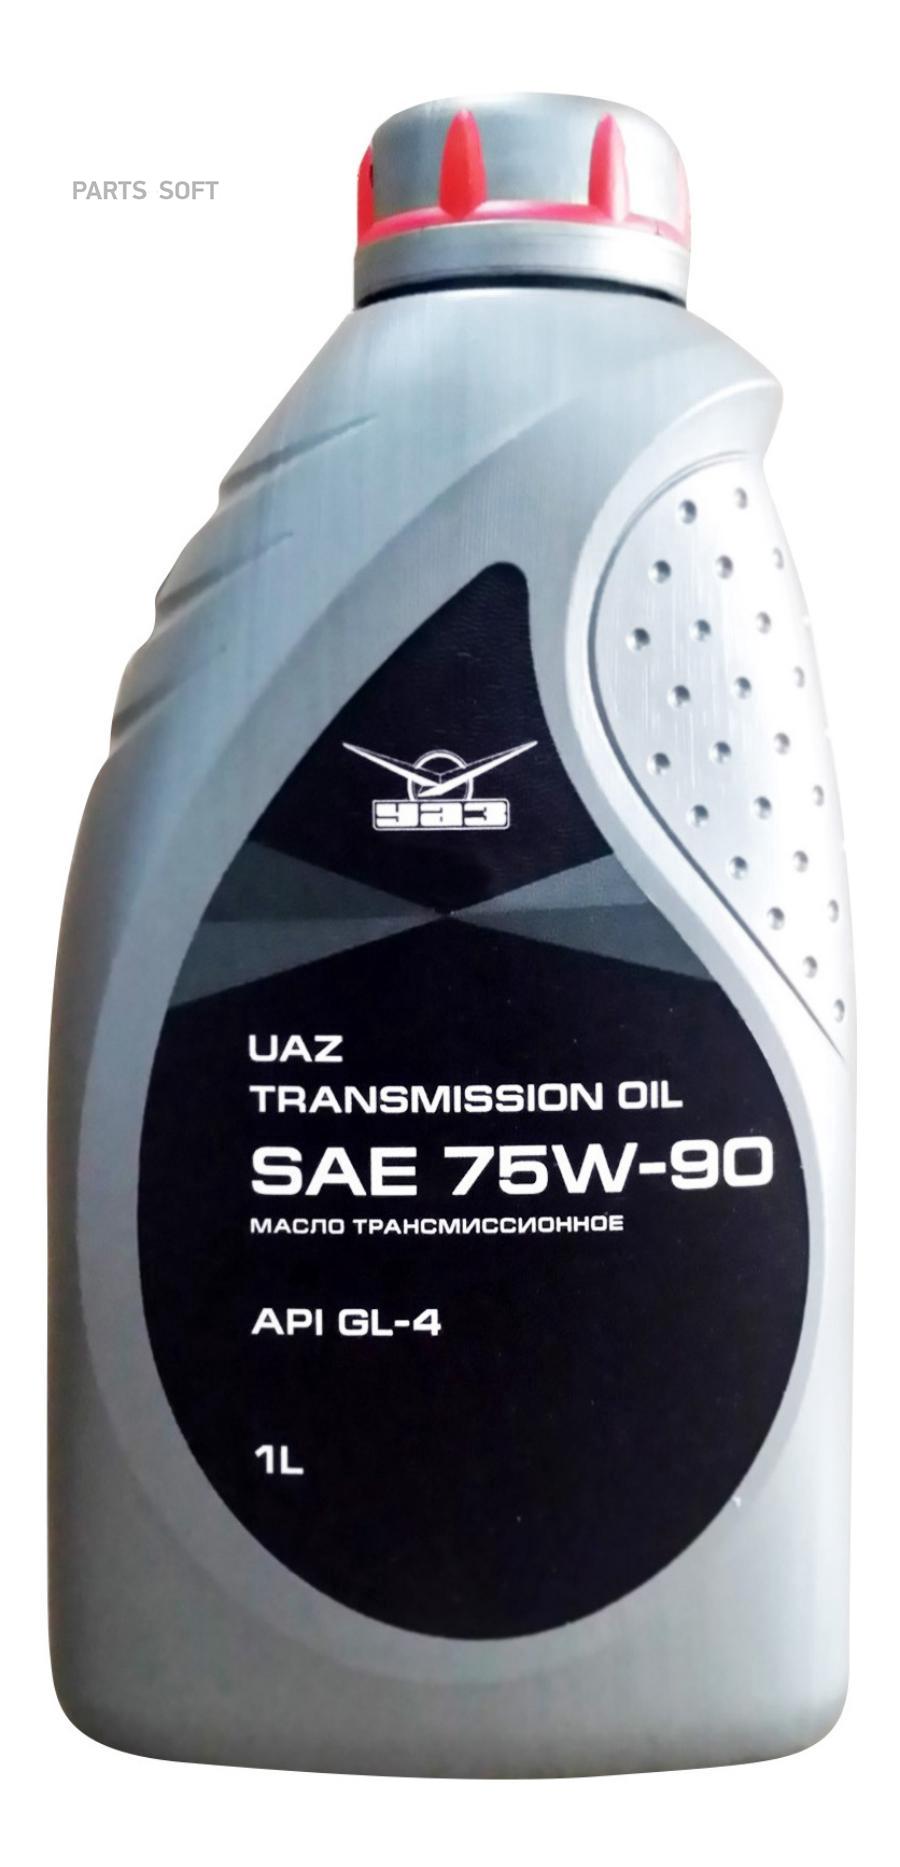 000000473400800 УАЗ Масло трансмиссионное полусинтетическое Transmission Oil 75W-90, 1л